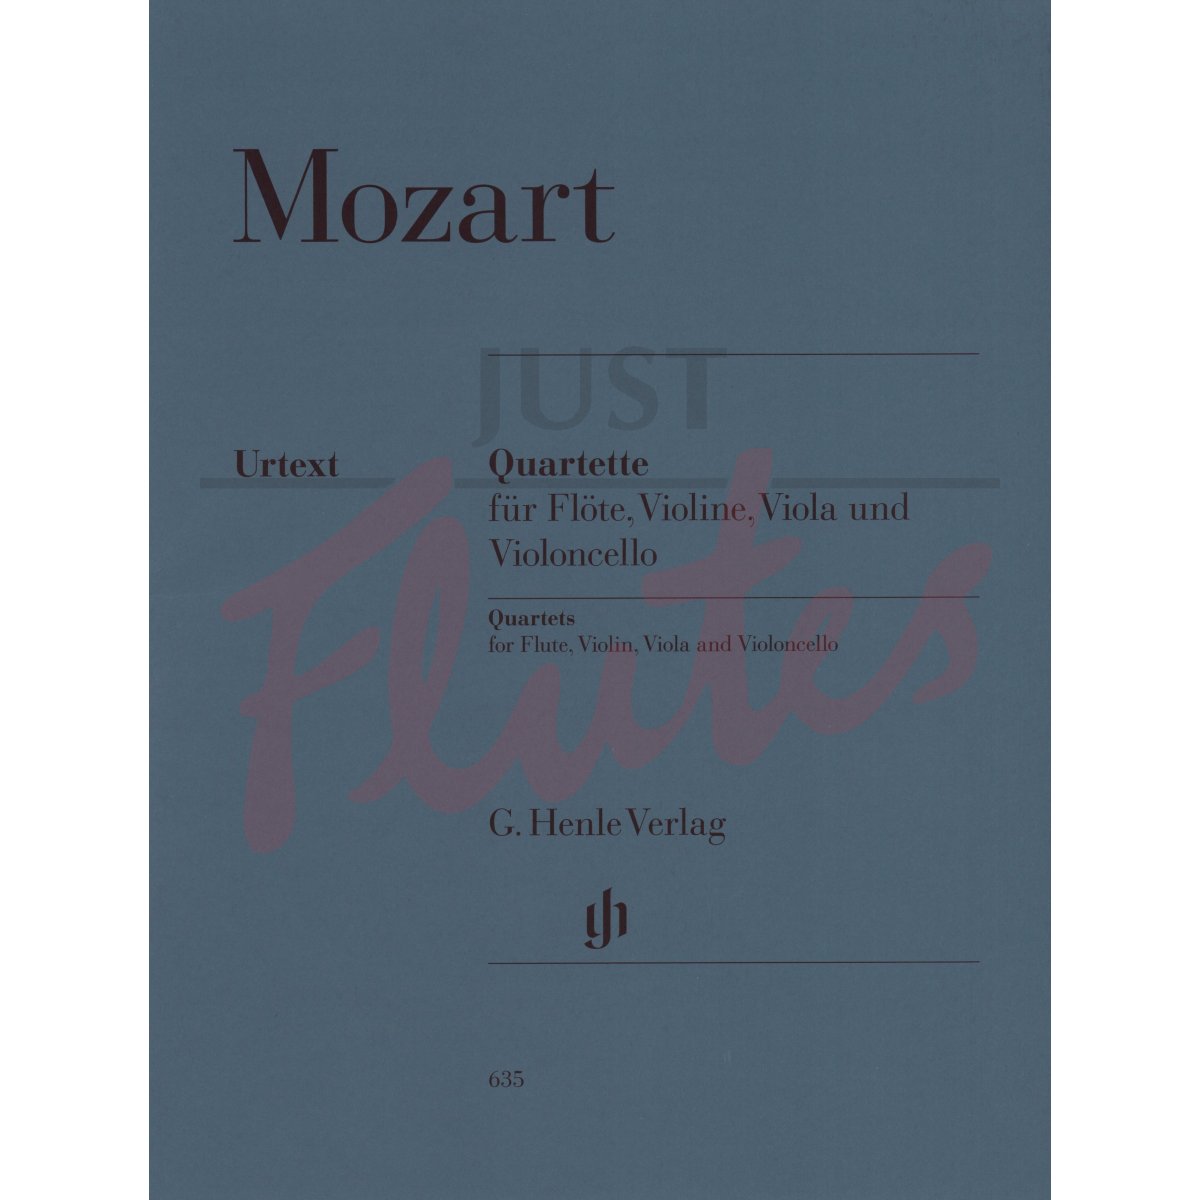 Mozart: The Flute Quartets for Flute, Violin, Viola and Cello